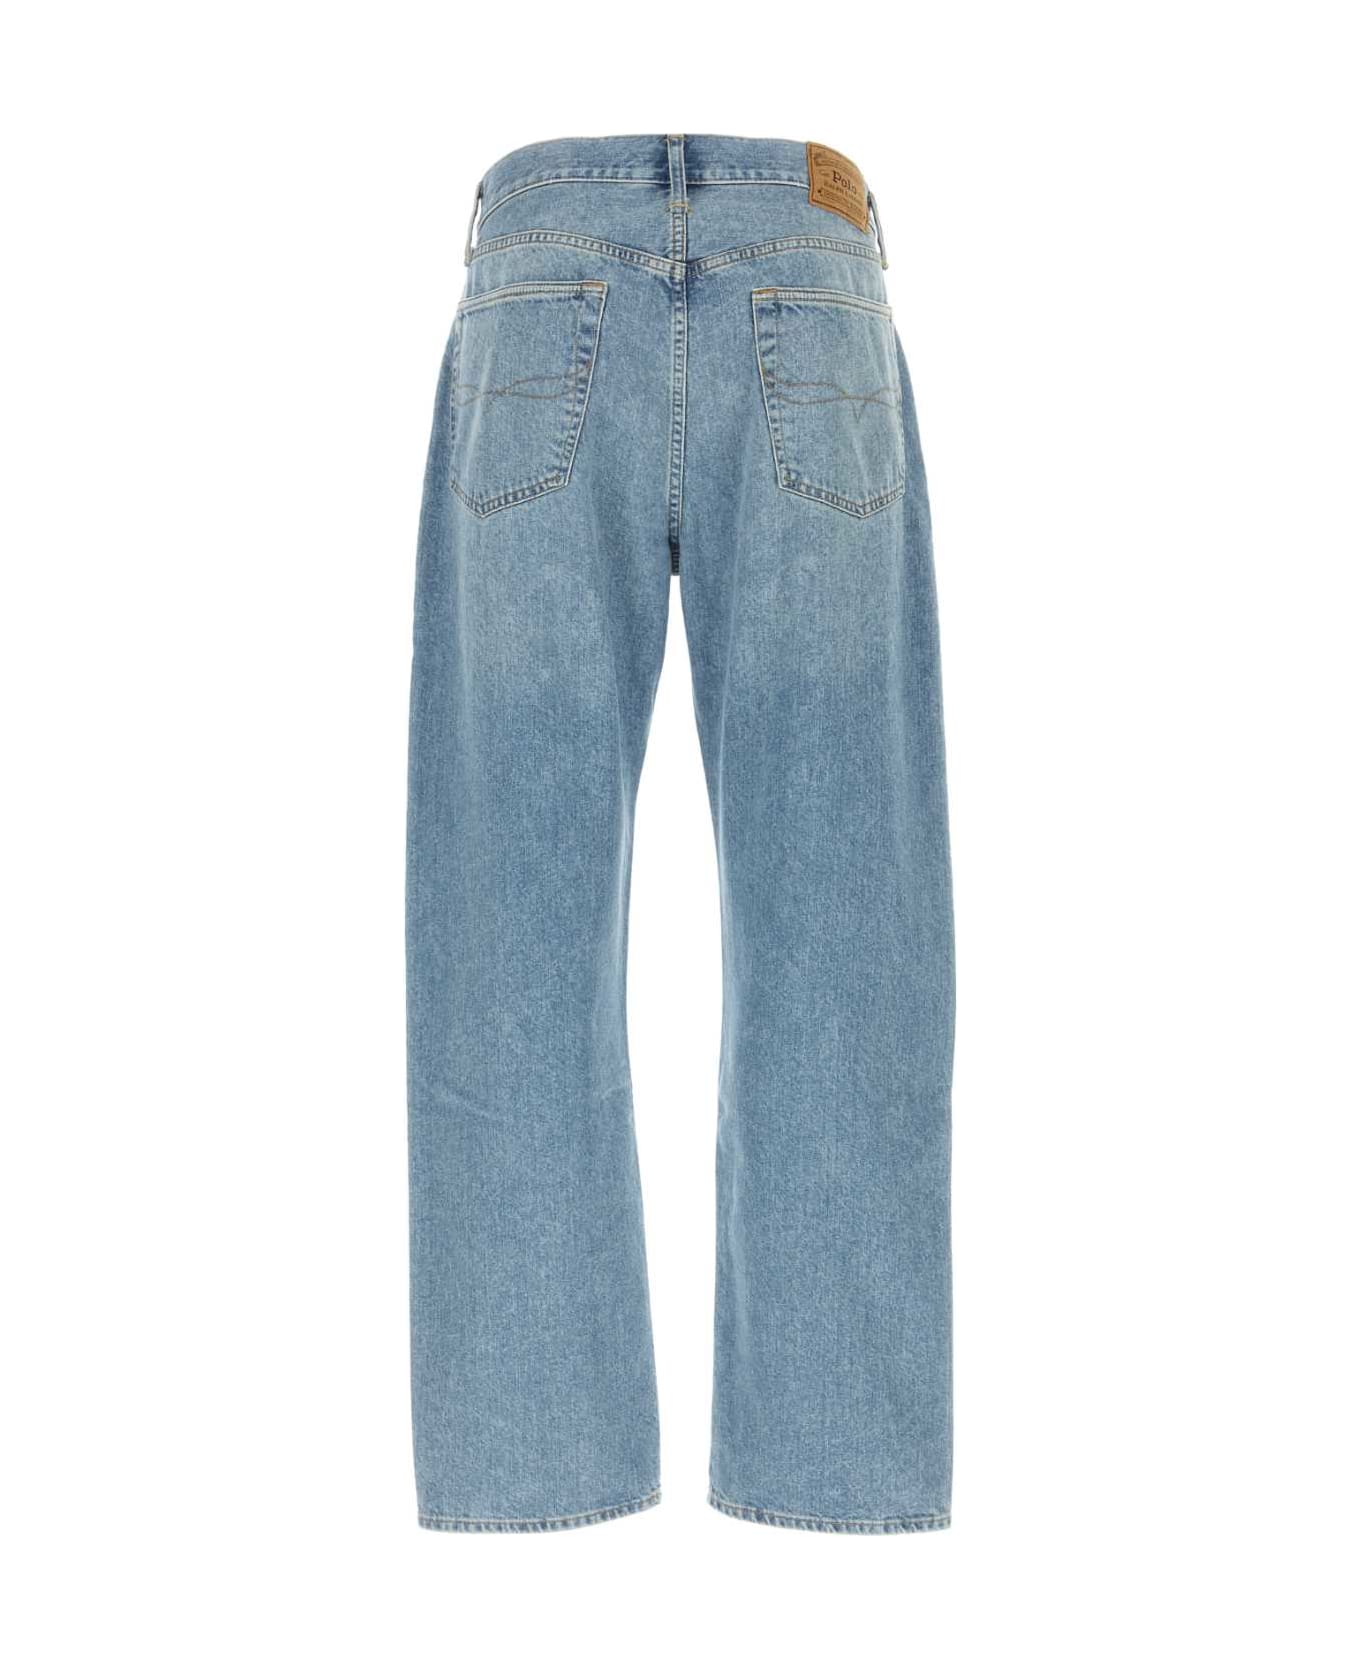 Polo Ralph Lauren Denim Jeans - LIGHTBLUE